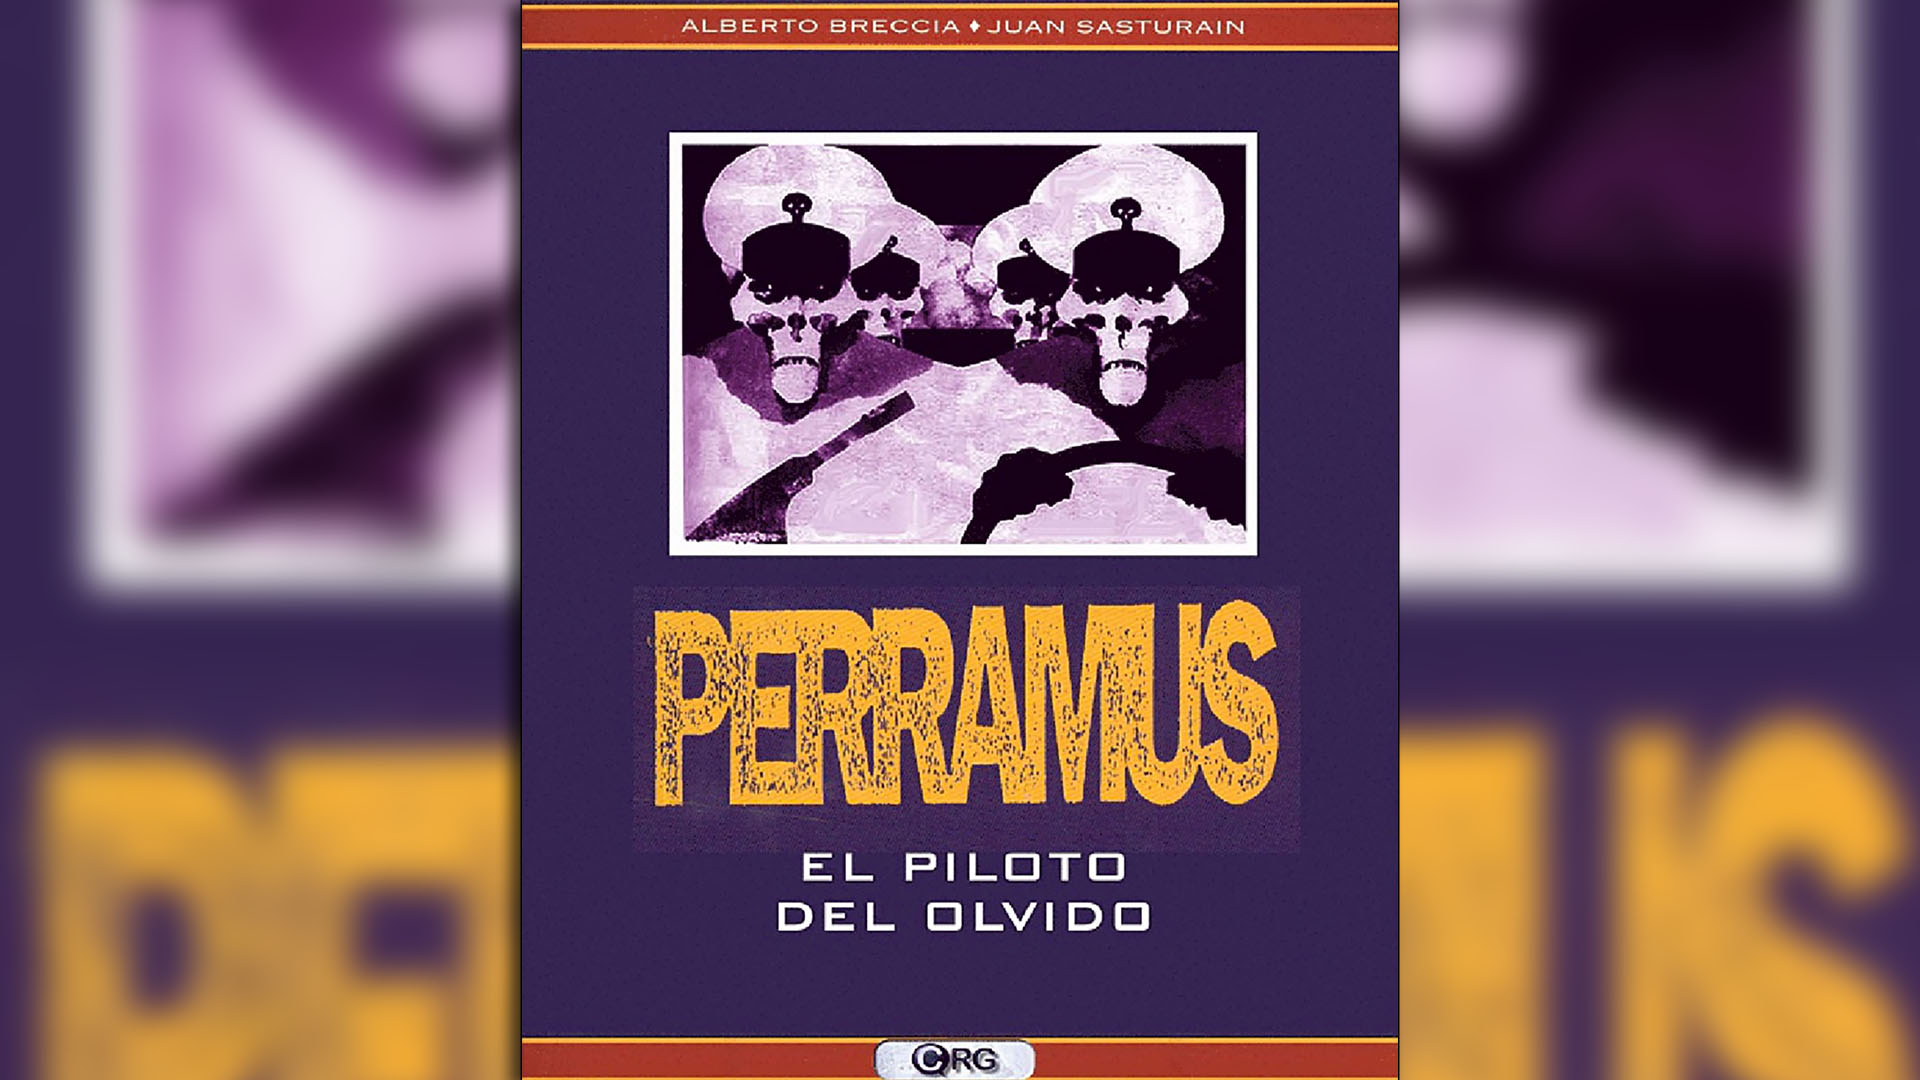 Portada de "Perramus", historieta escrita por Juan Sasturain e ilustrada por Alberto Breccia.